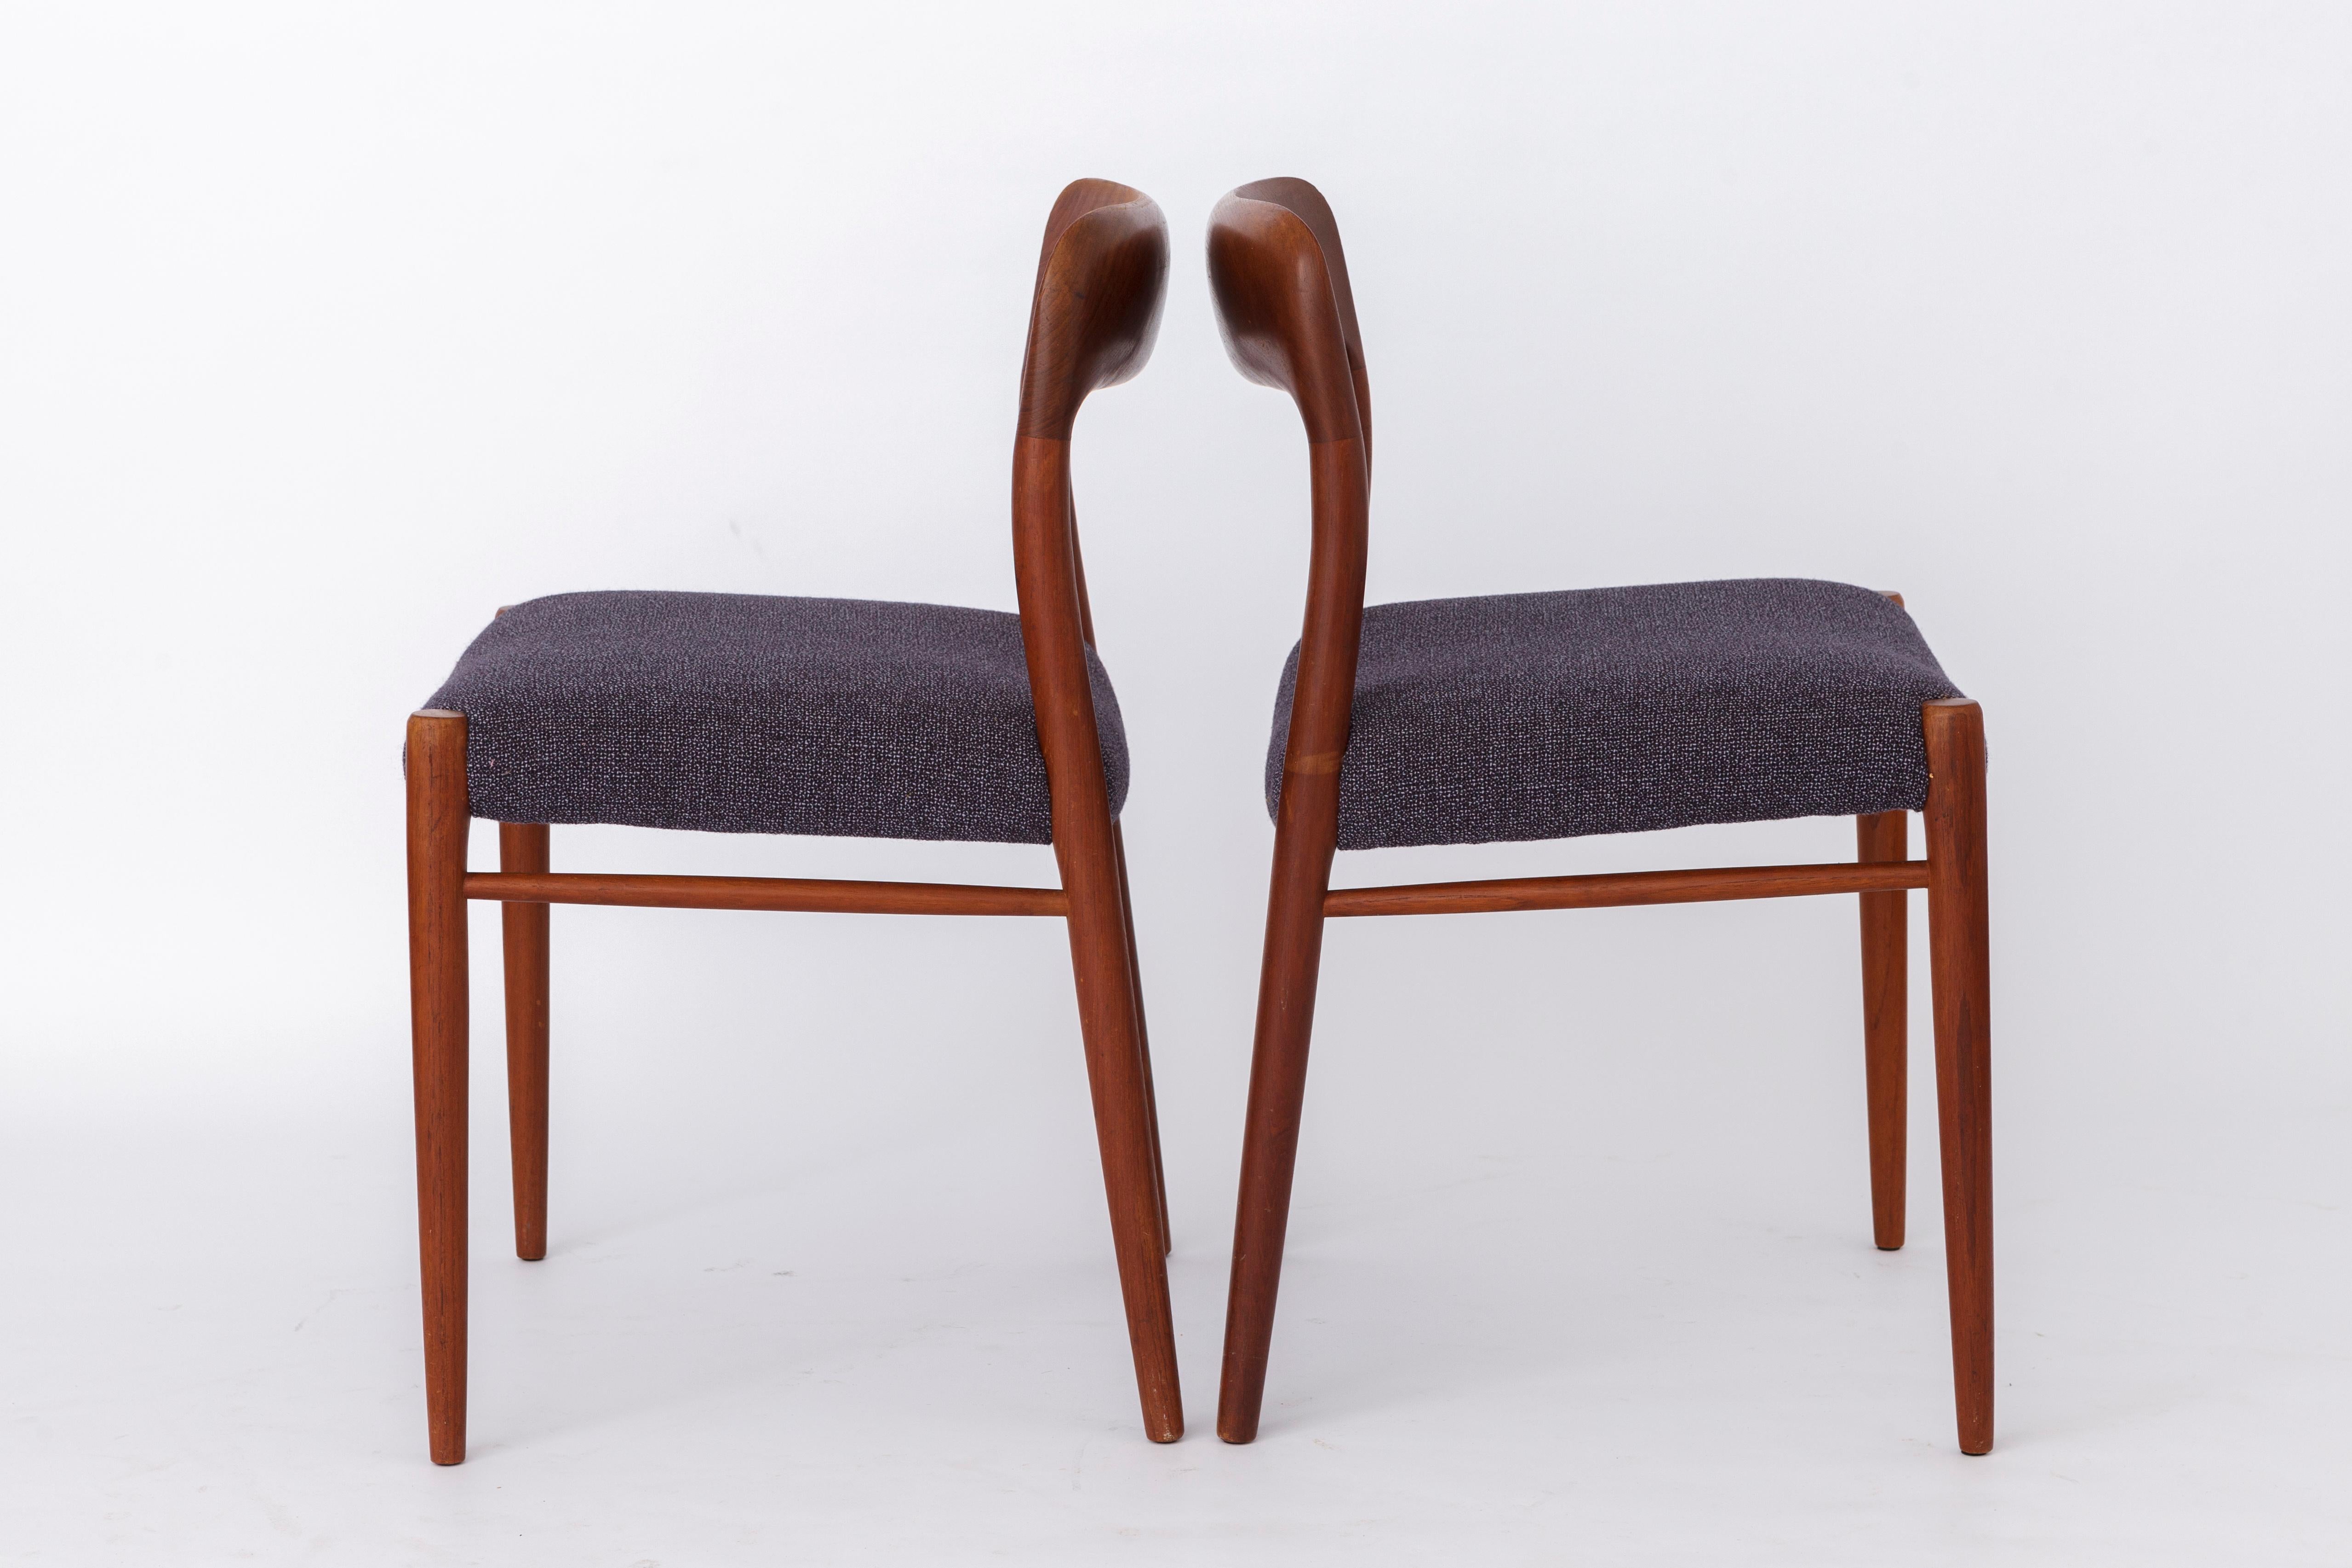 Polished 2 Vintage Chairs Niels Moller, Model 75, Teak, 1950s, Danish Vintage For Sale